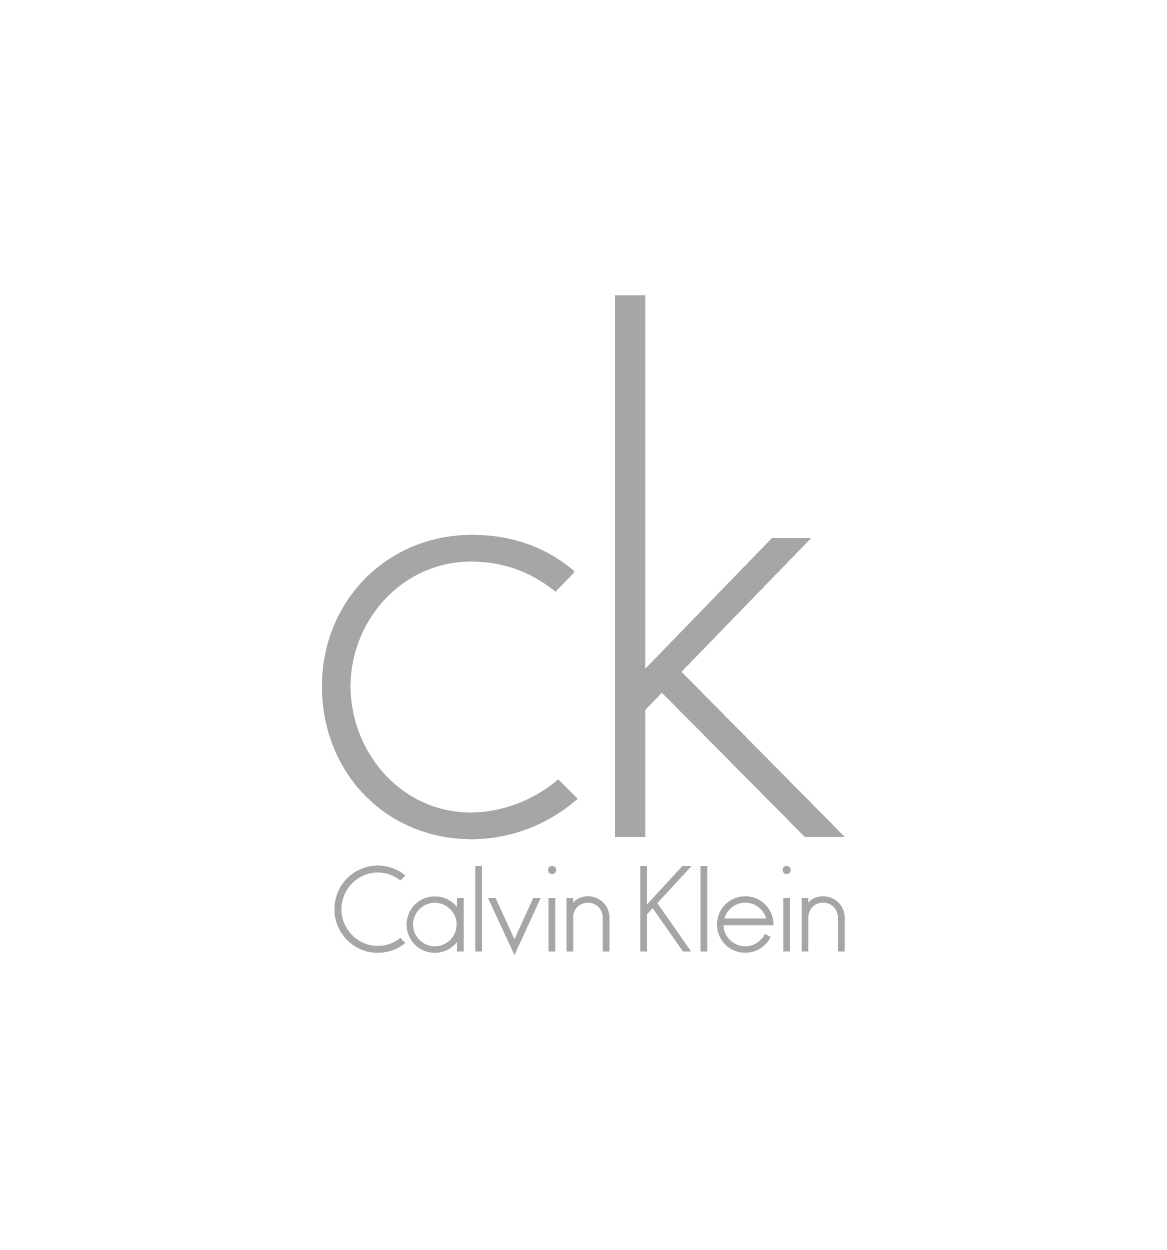 CK Calvin Klein логотип